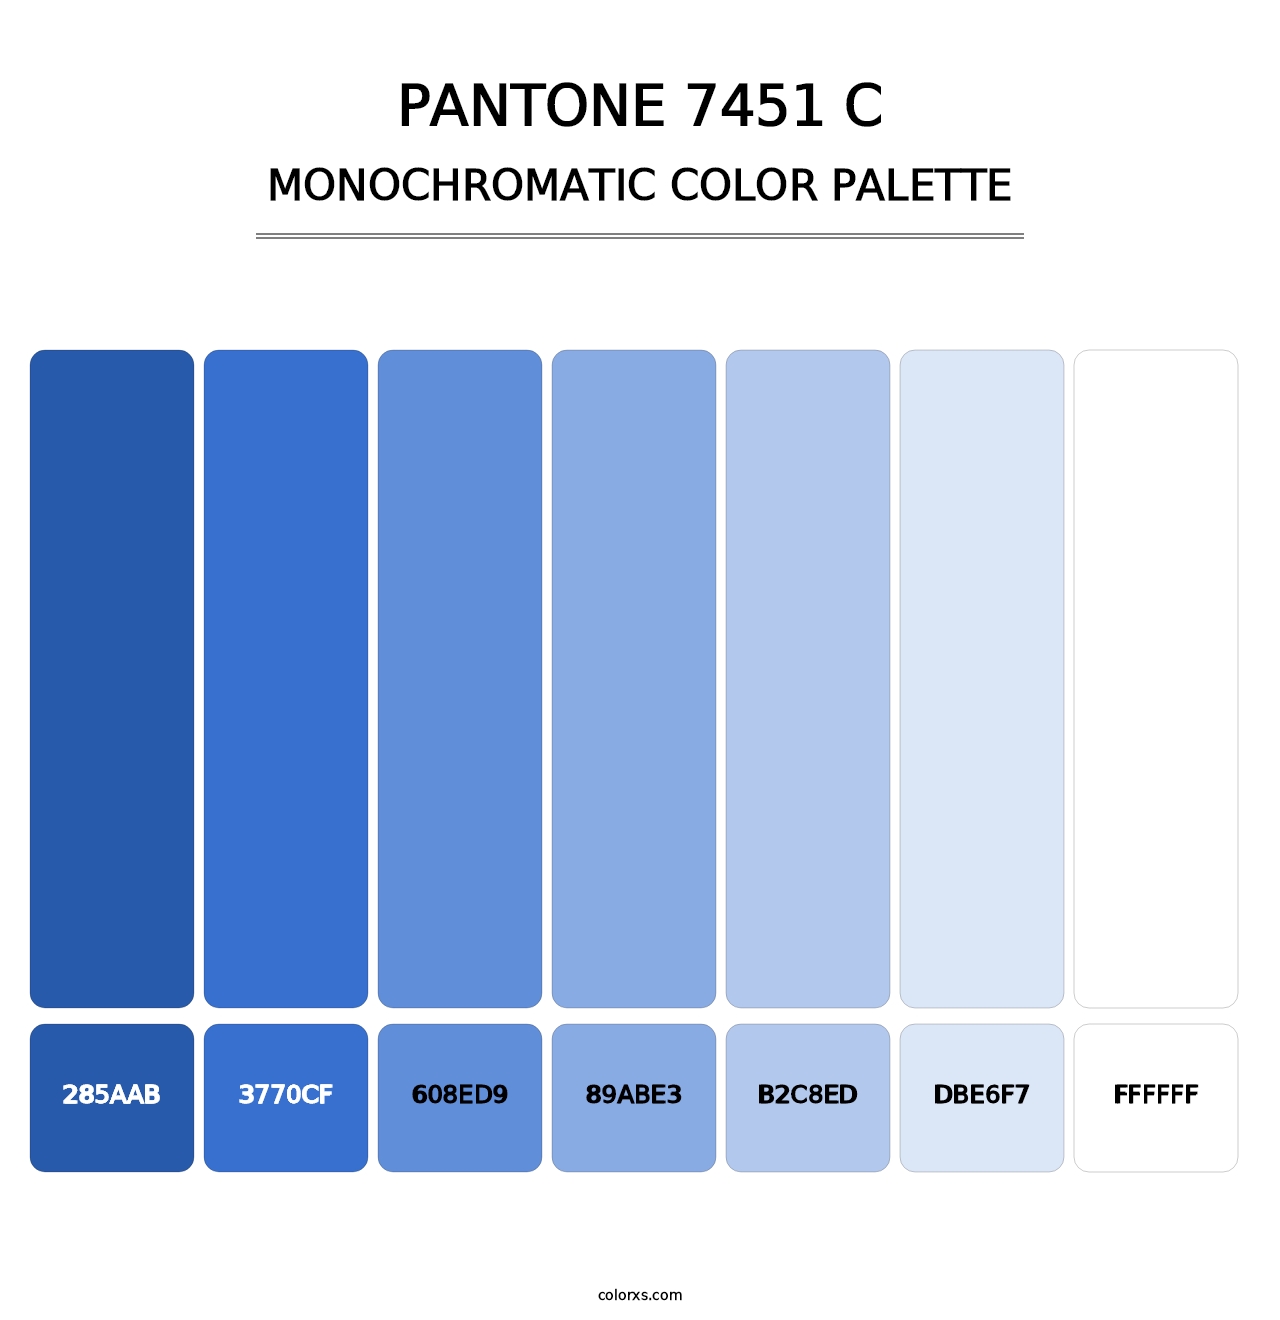 PANTONE 7451 C - Monochromatic Color Palette